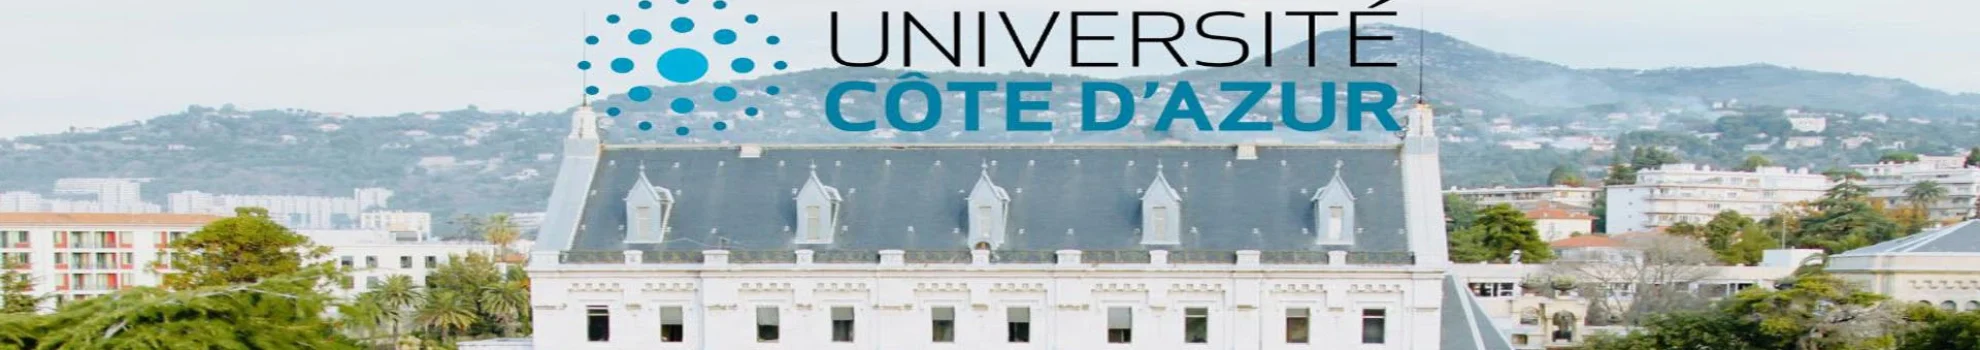 Côte d'Azur University